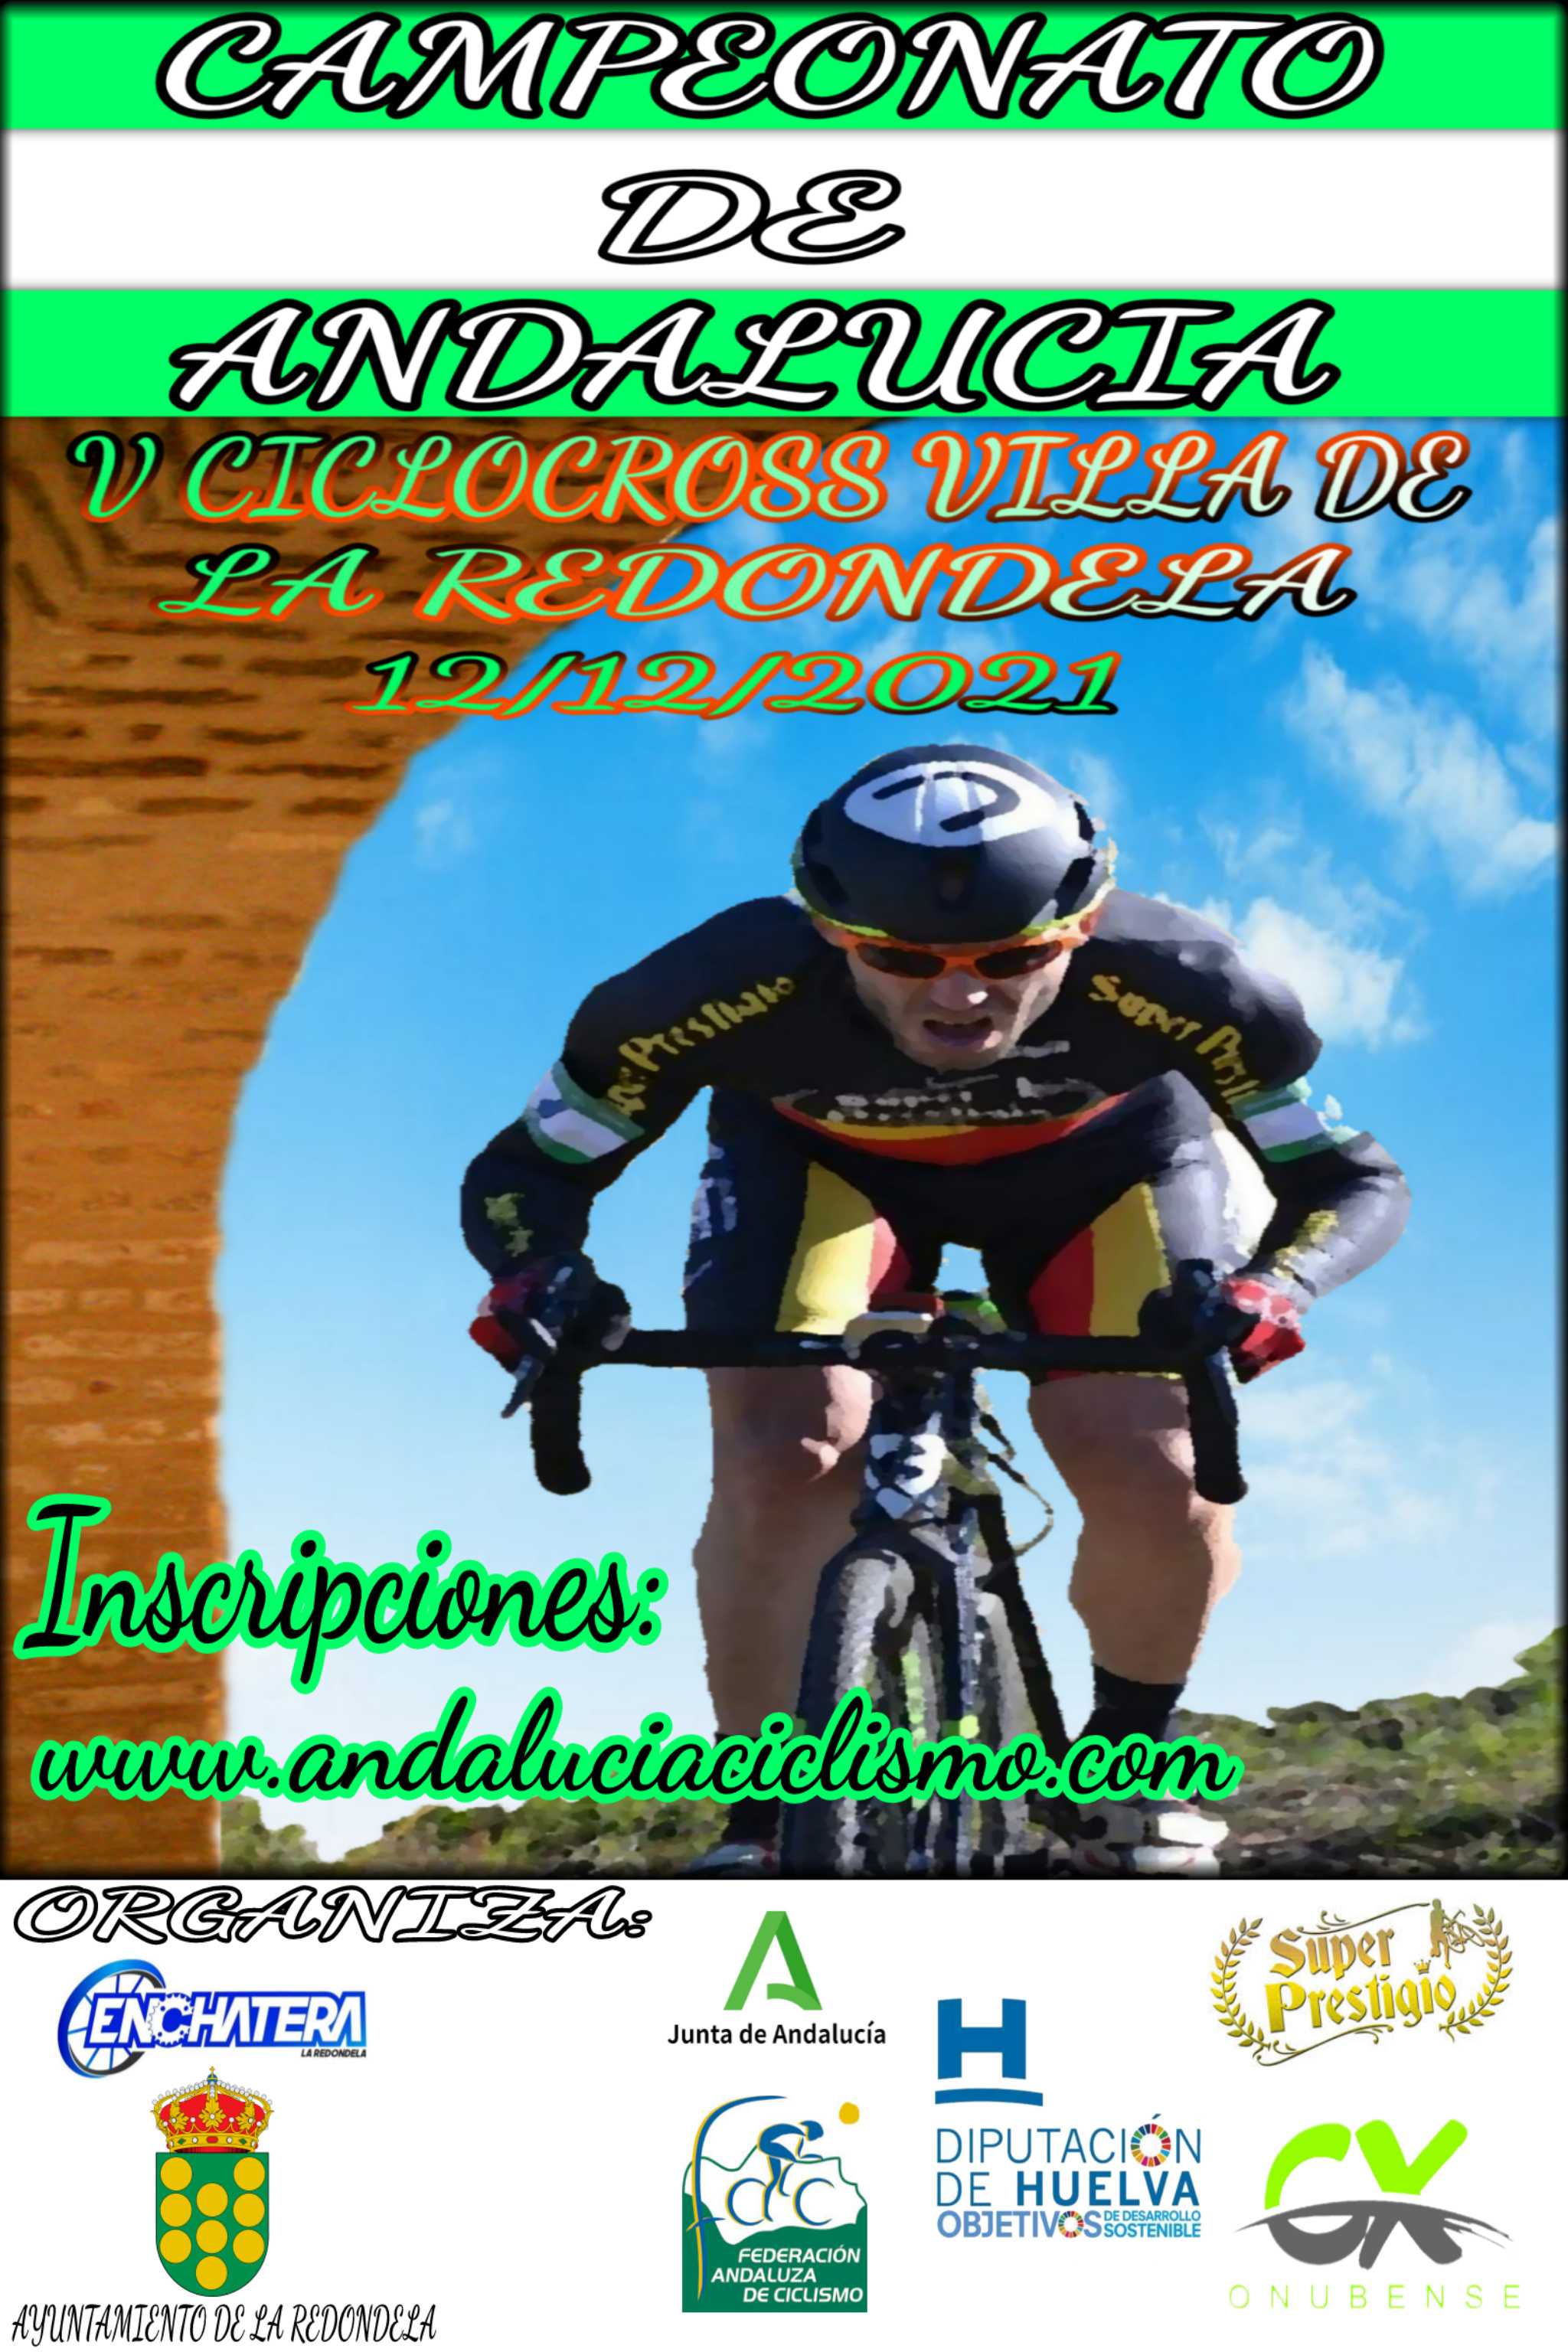 Apertura de inscripciones para el Campeonato de Andalucía Ciclocross 2021